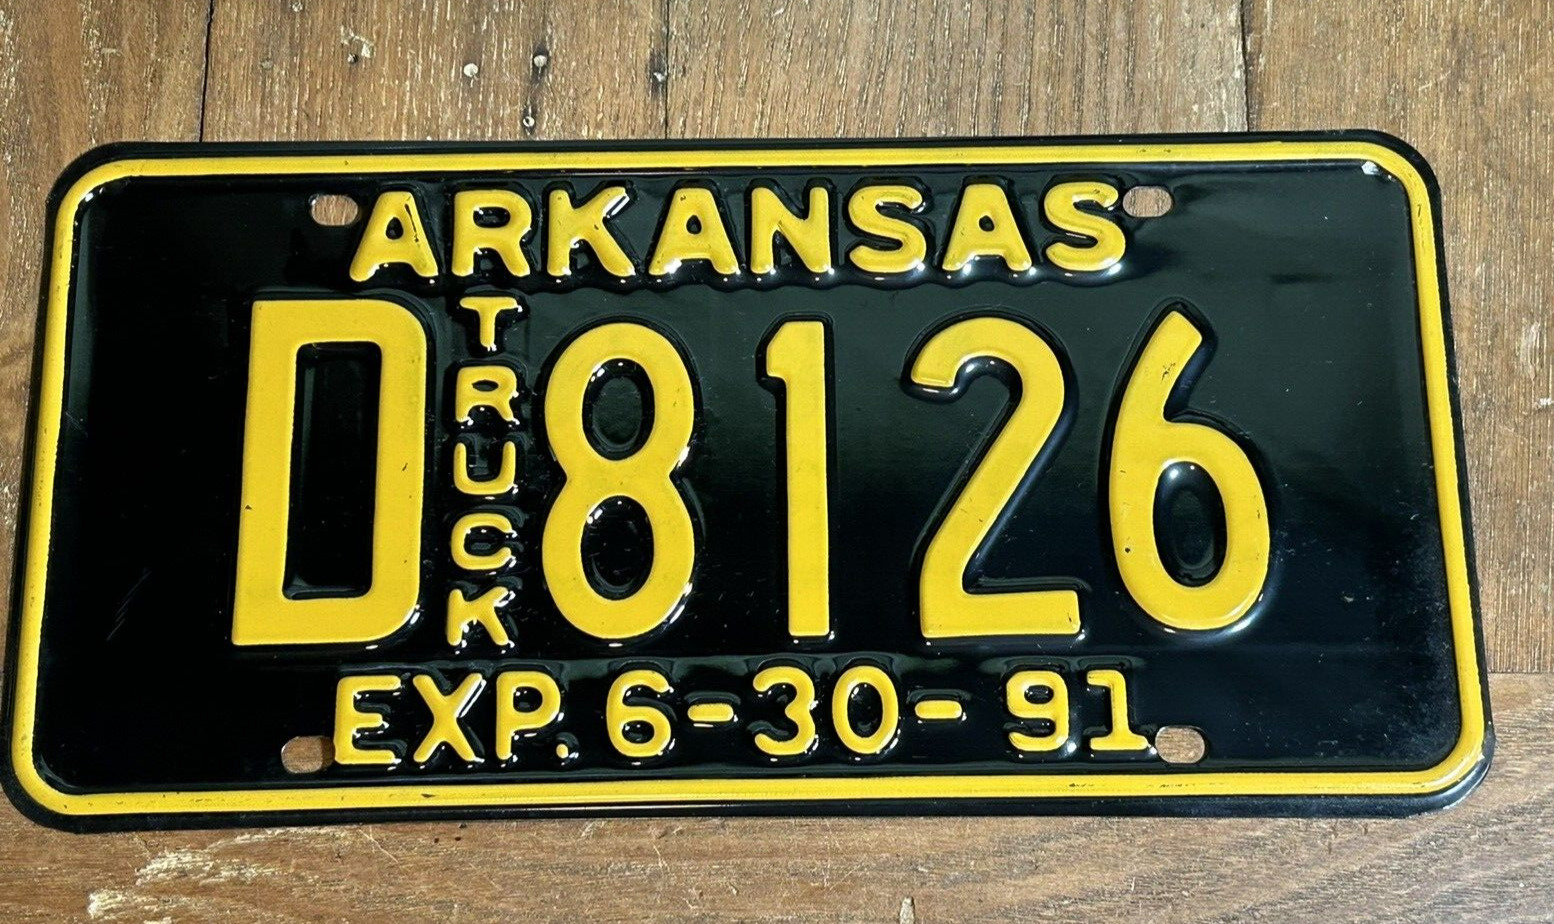 1991 Arkansas TRUCK vehicle License Plate unused steel NICE & SHINY